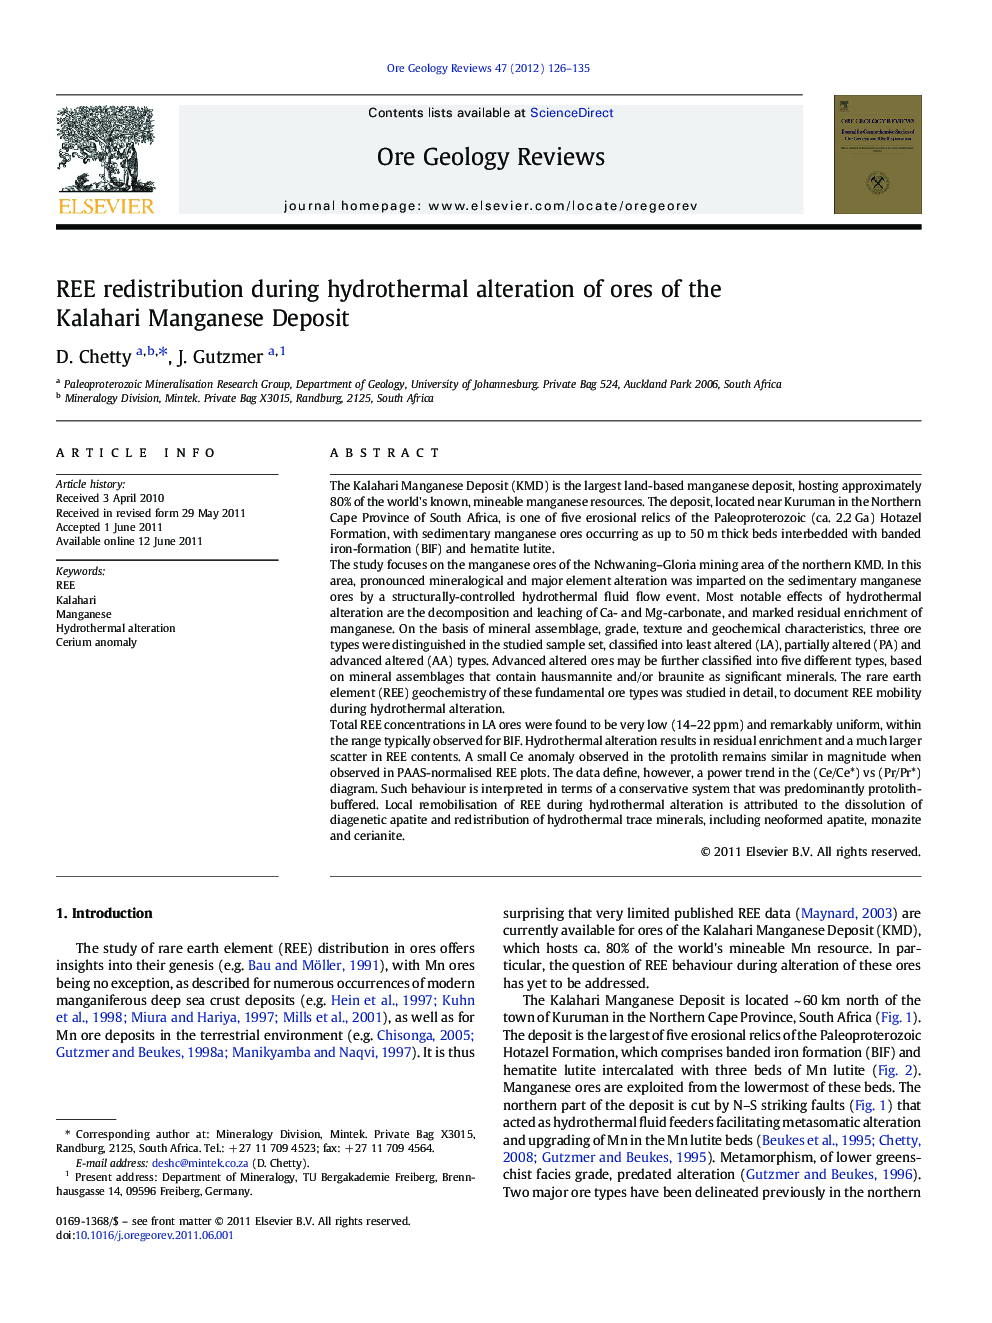 REE redistribution during hydrothermal alteration of ores of the Kalahari Manganese Deposit